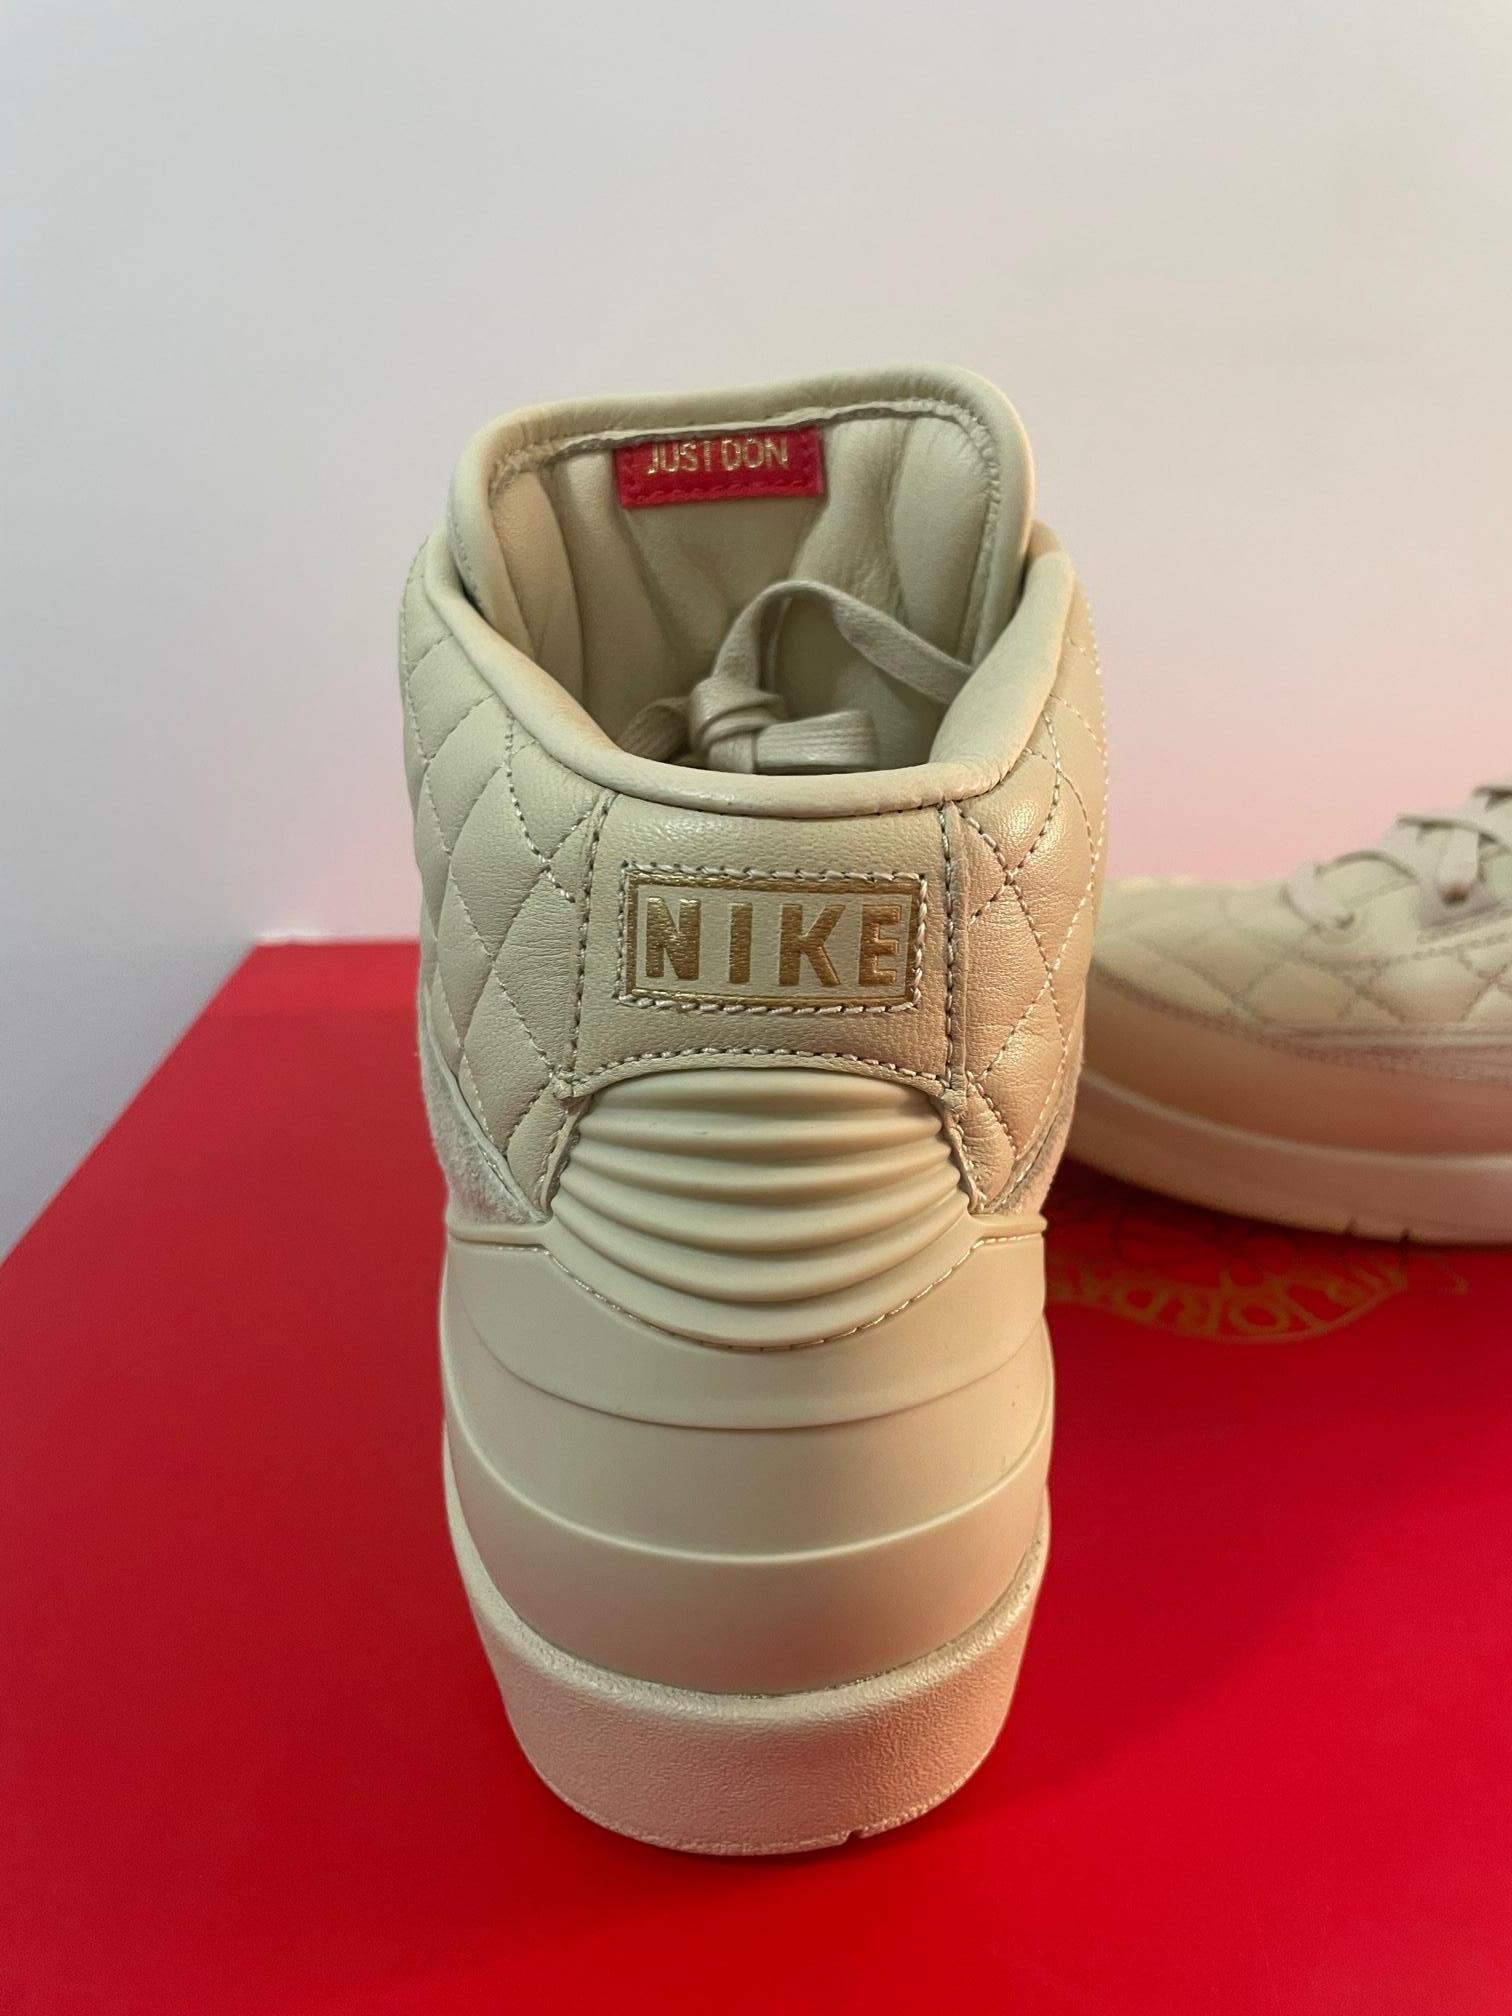 Rare Nike Shoes Just Don x Air Jordan 2 Retro “Beach” For Sale 1